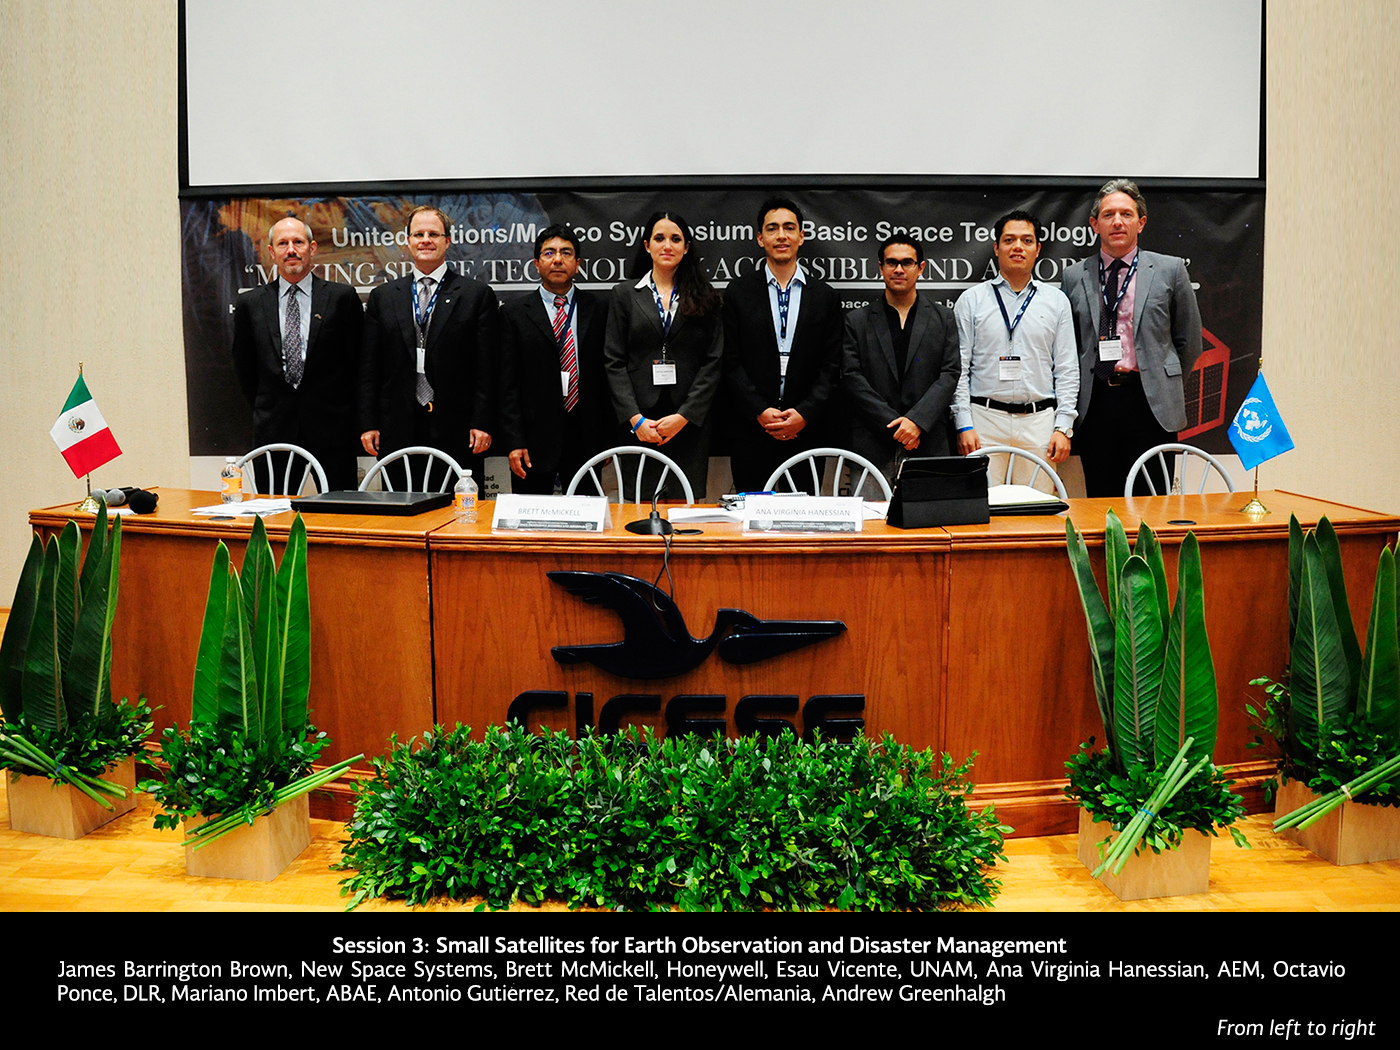 Presenta SCT avances de los satélites Centenario y Morelos 3 en Foro Internacional de la ONU